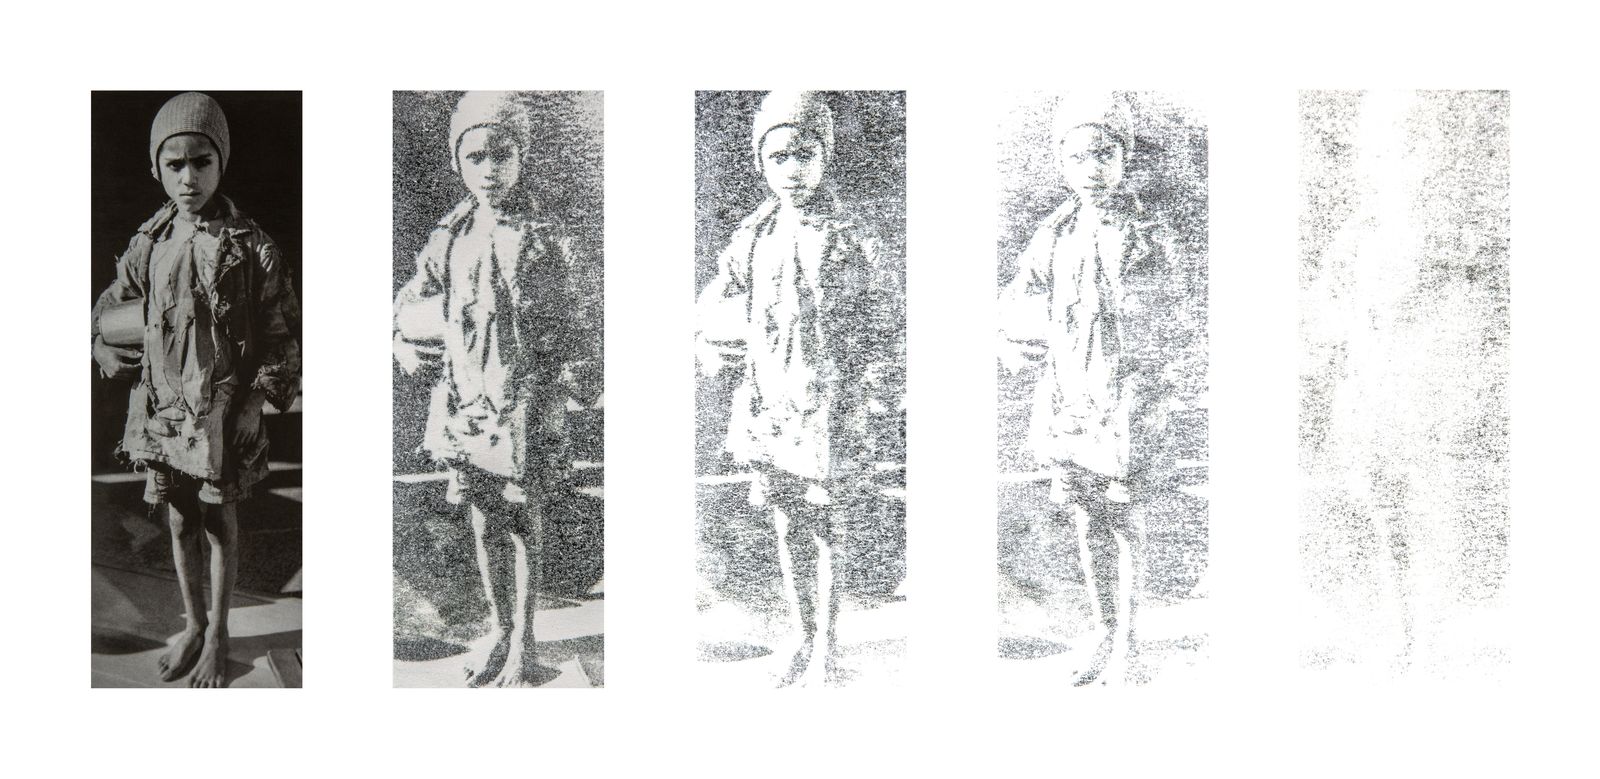 © Elena, Leonidas Kollatou, Toumpanos - Mixed media, photo etching, erasure process of archival image. Skeletal child from starvation, Athens, 1941.